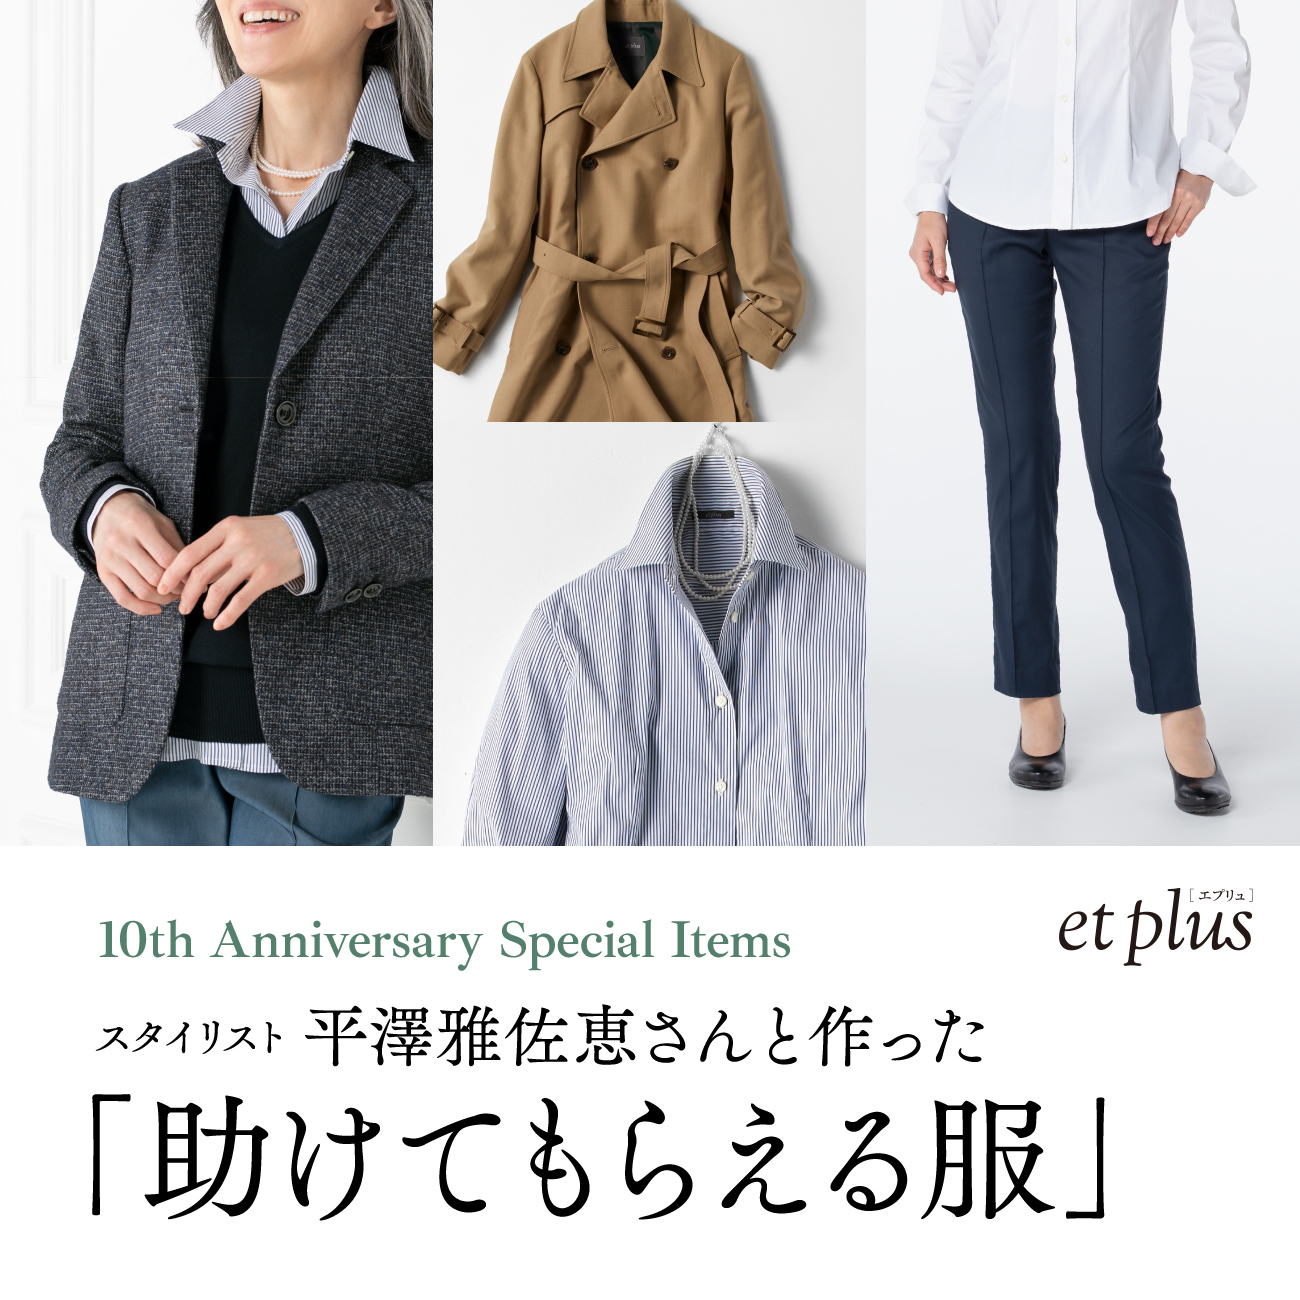 【特集】スタイリスト平澤雅佐恵さんと作った「助けてもらえる服」